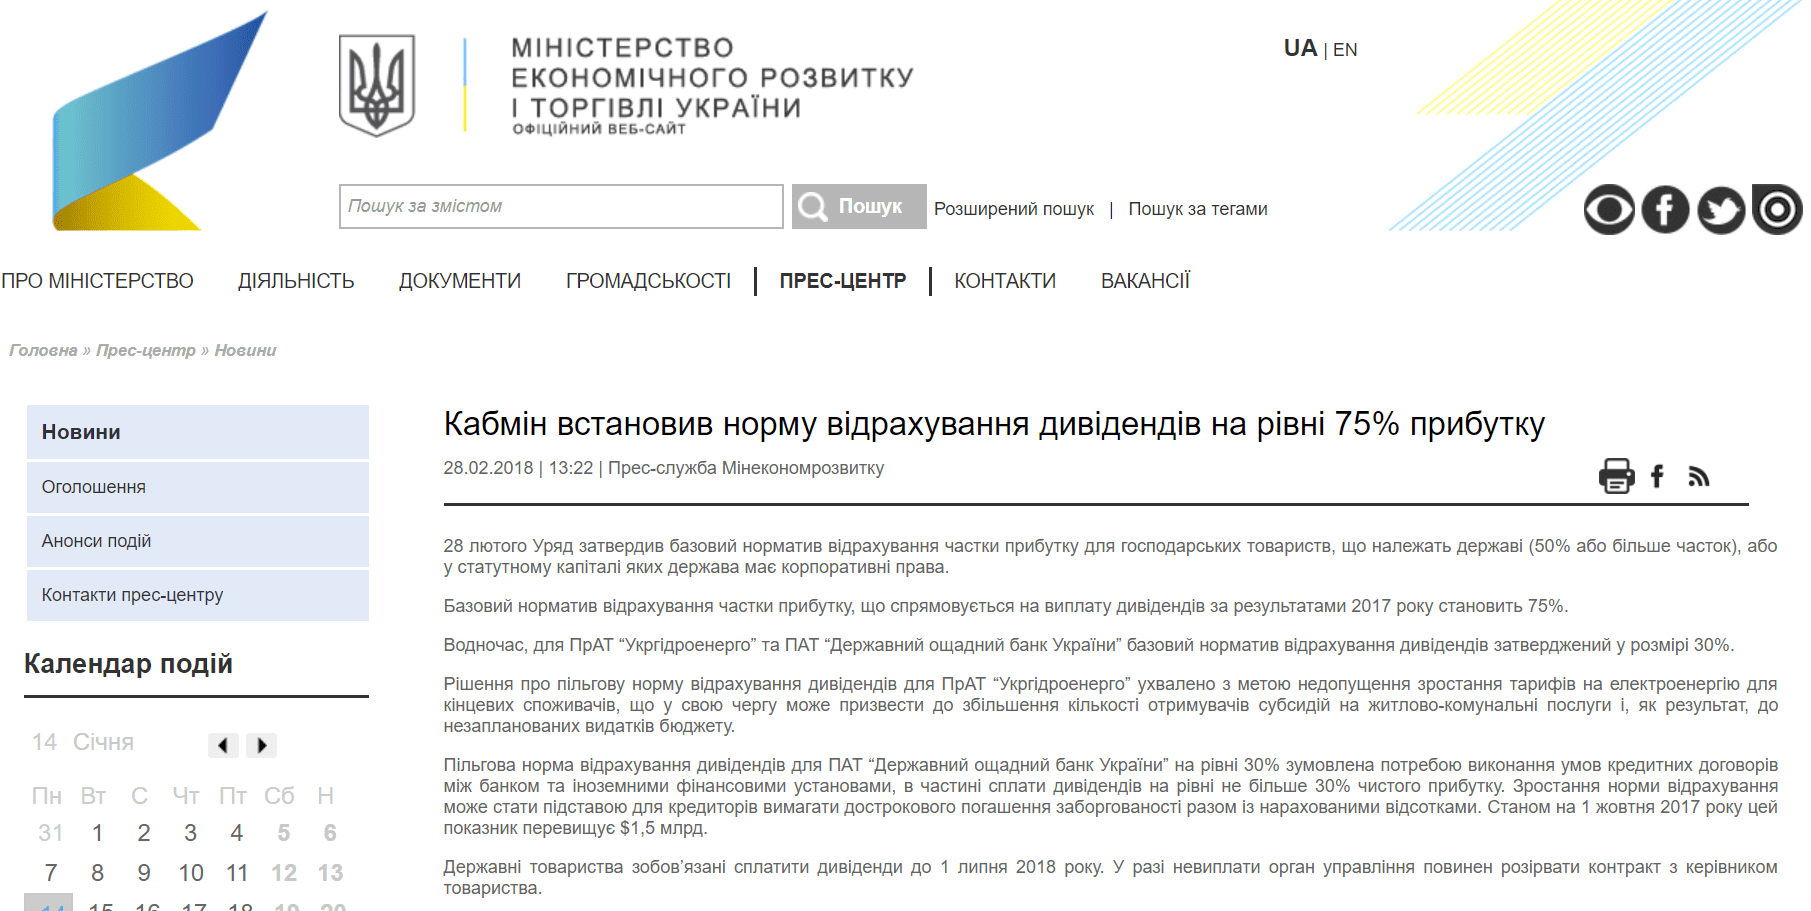 Міністерство економічного розвитку і торгівлі України: Кабмін встановив норму відрахування дивідендів на рівні 75% прибутку